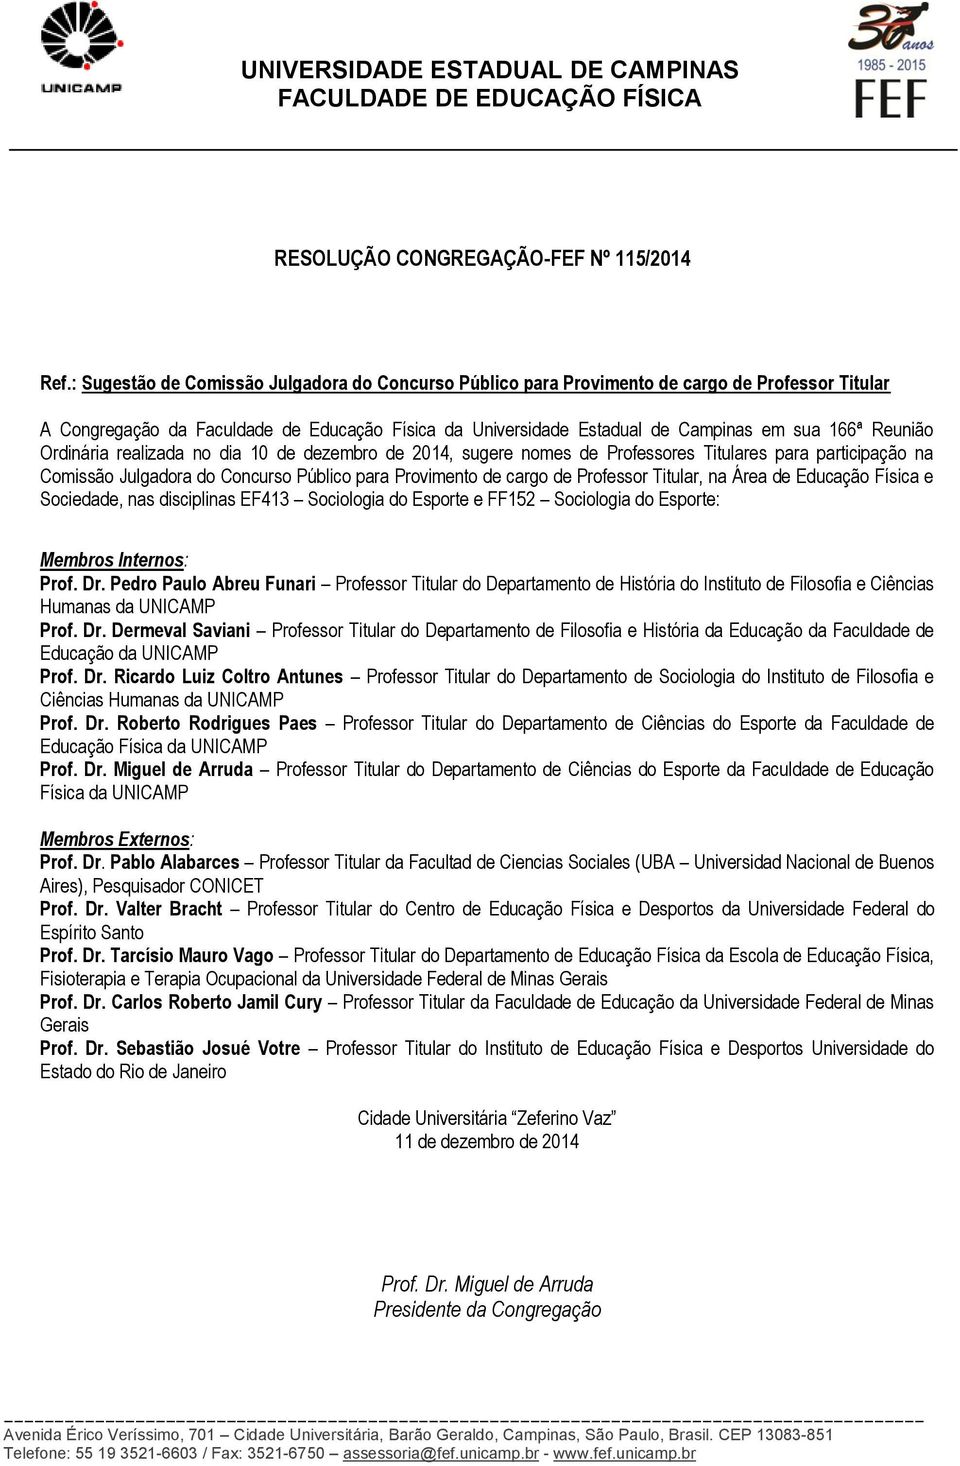 Reunião Ordinária realizada no dia 10 de dezembro de 2014, sugere nomes de Professores Titulares para participação na Comissão Julgadora do Concurso Público para Provimento de cargo de Professor